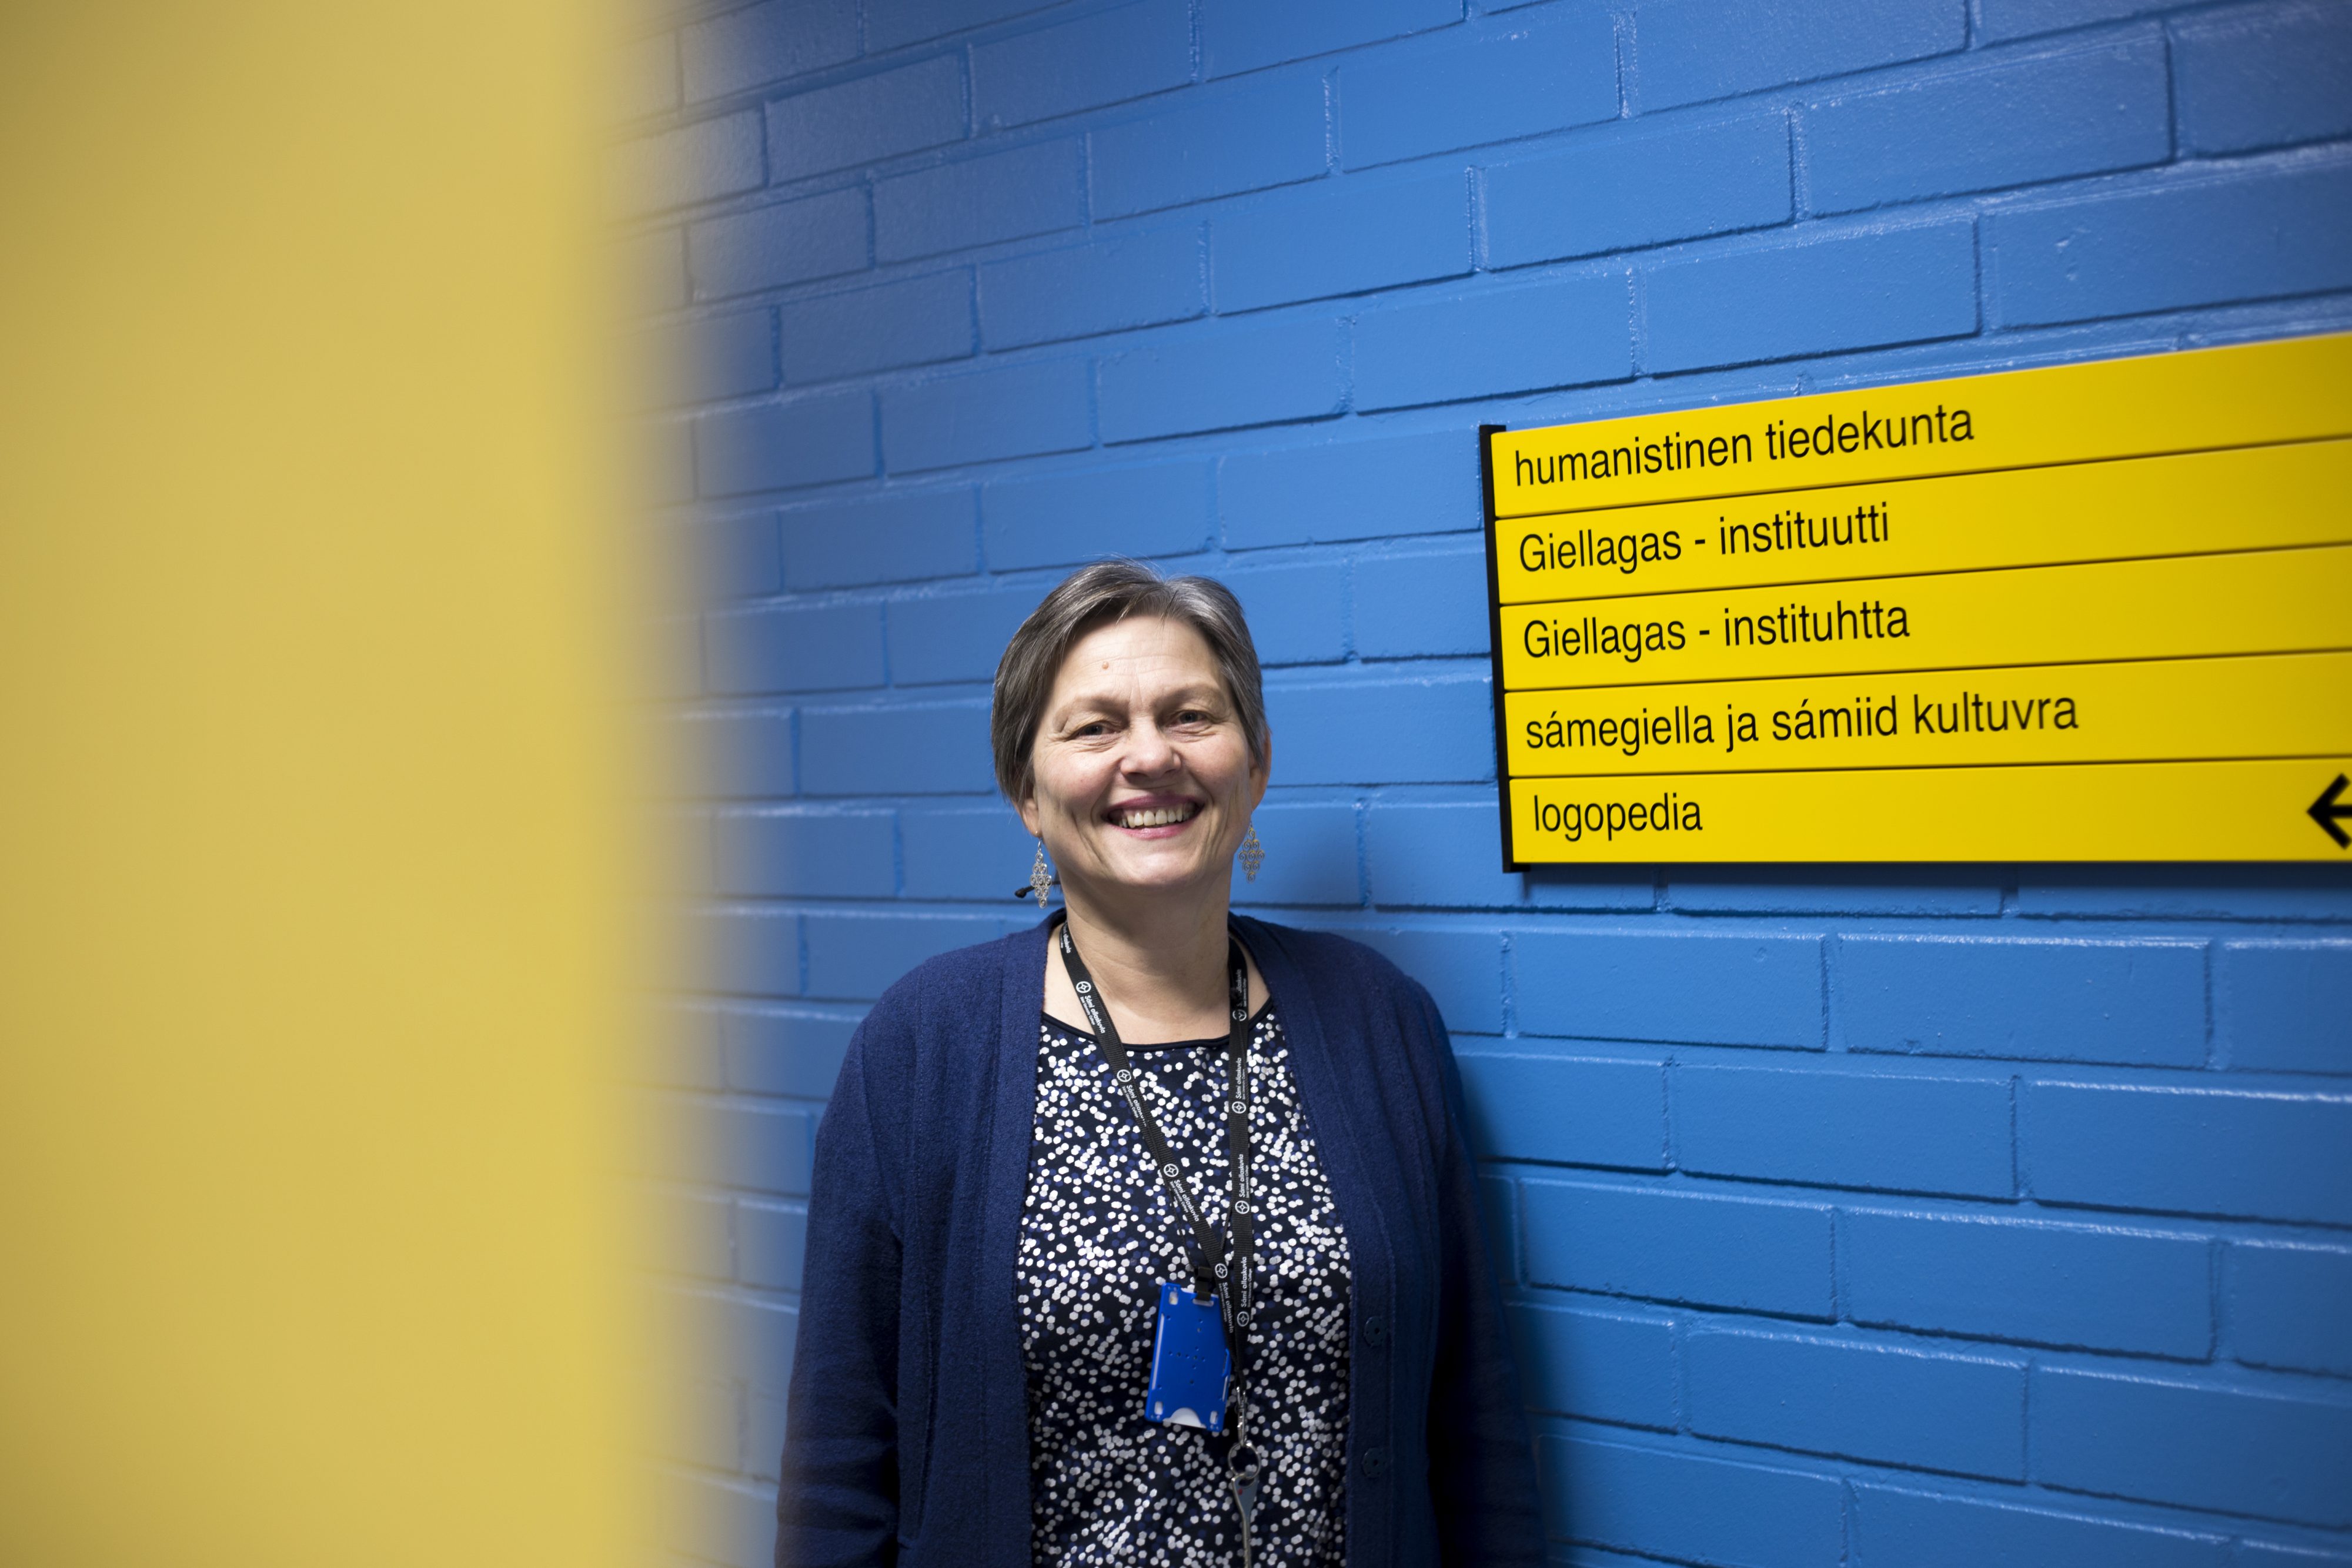 Giellagas-instituutin johtaja Anni-Siiri Länsman iloitsee mahdollisuudesta kouluttaa nopealla aikataululla saamenkielisiä opettajia pian eläköityvien tilalle.